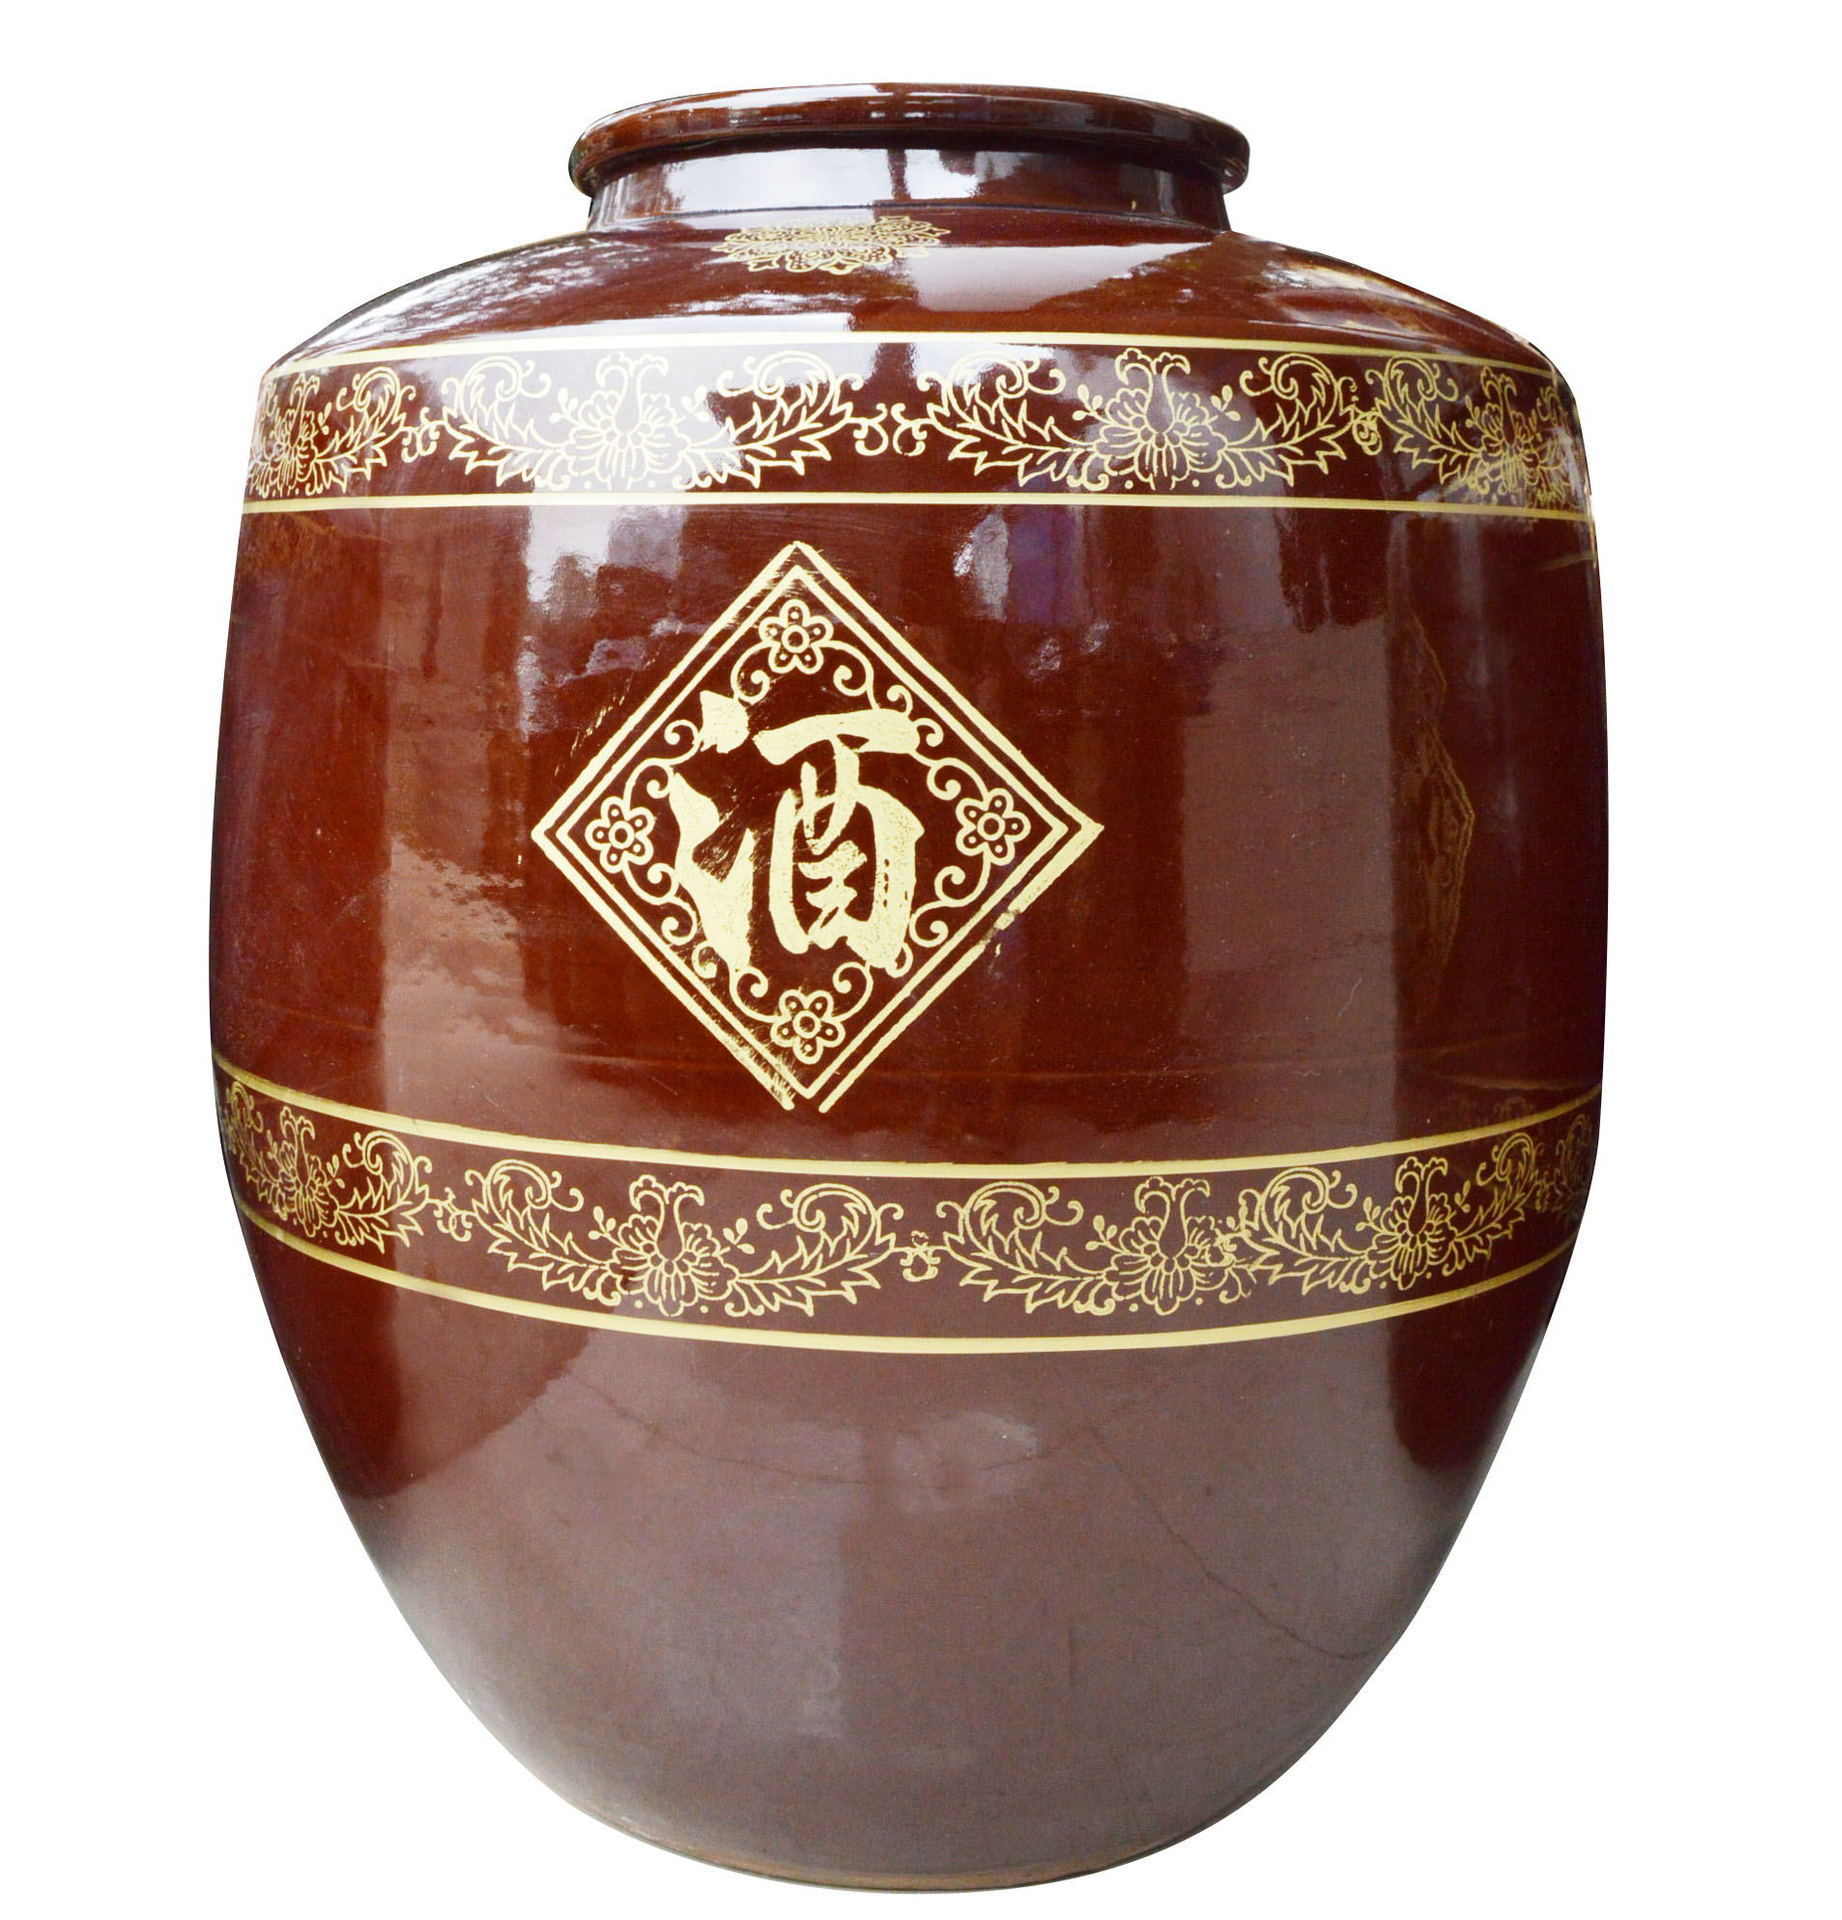 陶瓷酒坛 火速科技陶瓷 陶瓷包装定做 陶瓷酒瓶